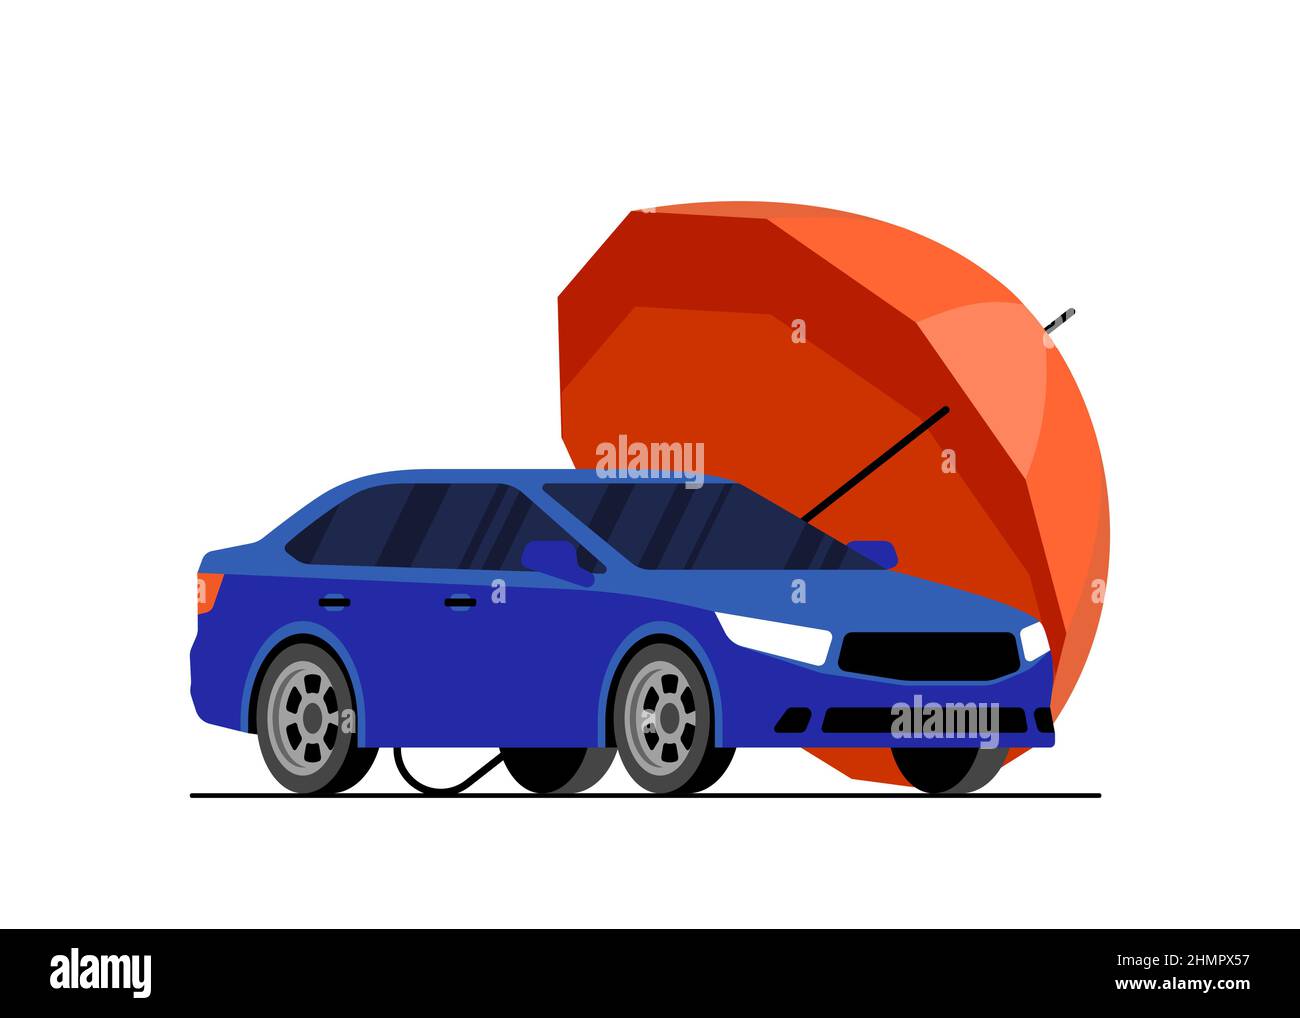 Roter Regenschirm schützt blaues Auto. Kfz-Versicherung Symbol Konzept.  Transport Schutz und Sicherheit Werbung Banner Design. Abbildung des  Vektors für den automatischen Fahrzeugschutz eps Stock-Vektorgrafik - Alamy